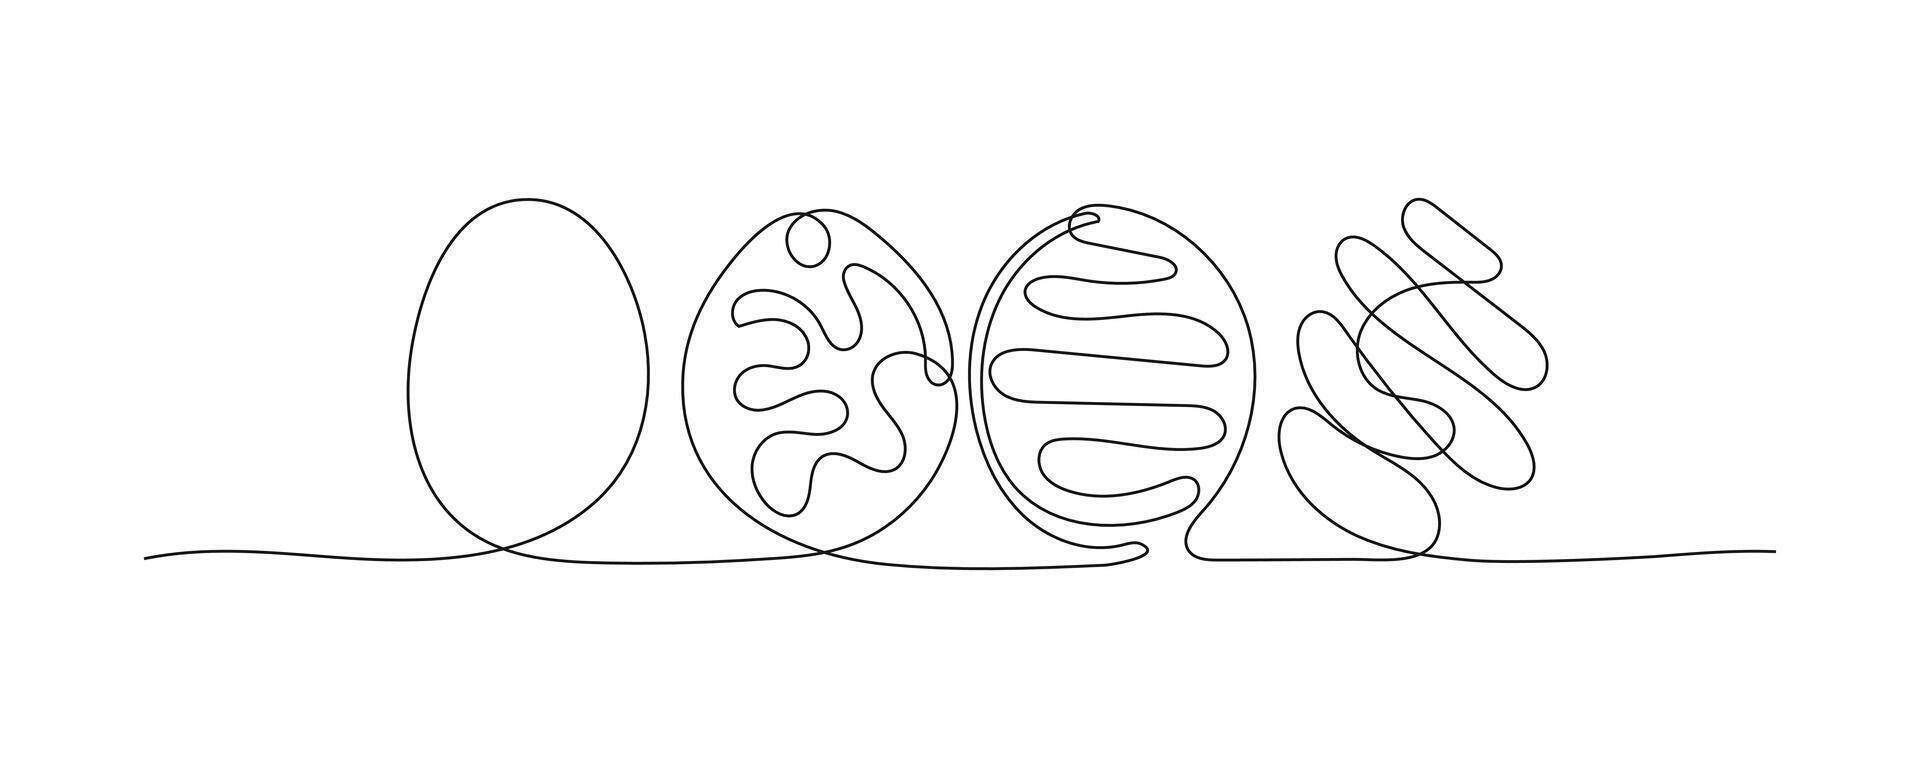 Pasqua uova uno continuo linea minimalista illustrazione. semplice mano disegnato a forma di uovo illustrazione di schema arte con modificabile ictus. minimalista elemento per decorazione di vacanza carte e banner vettore